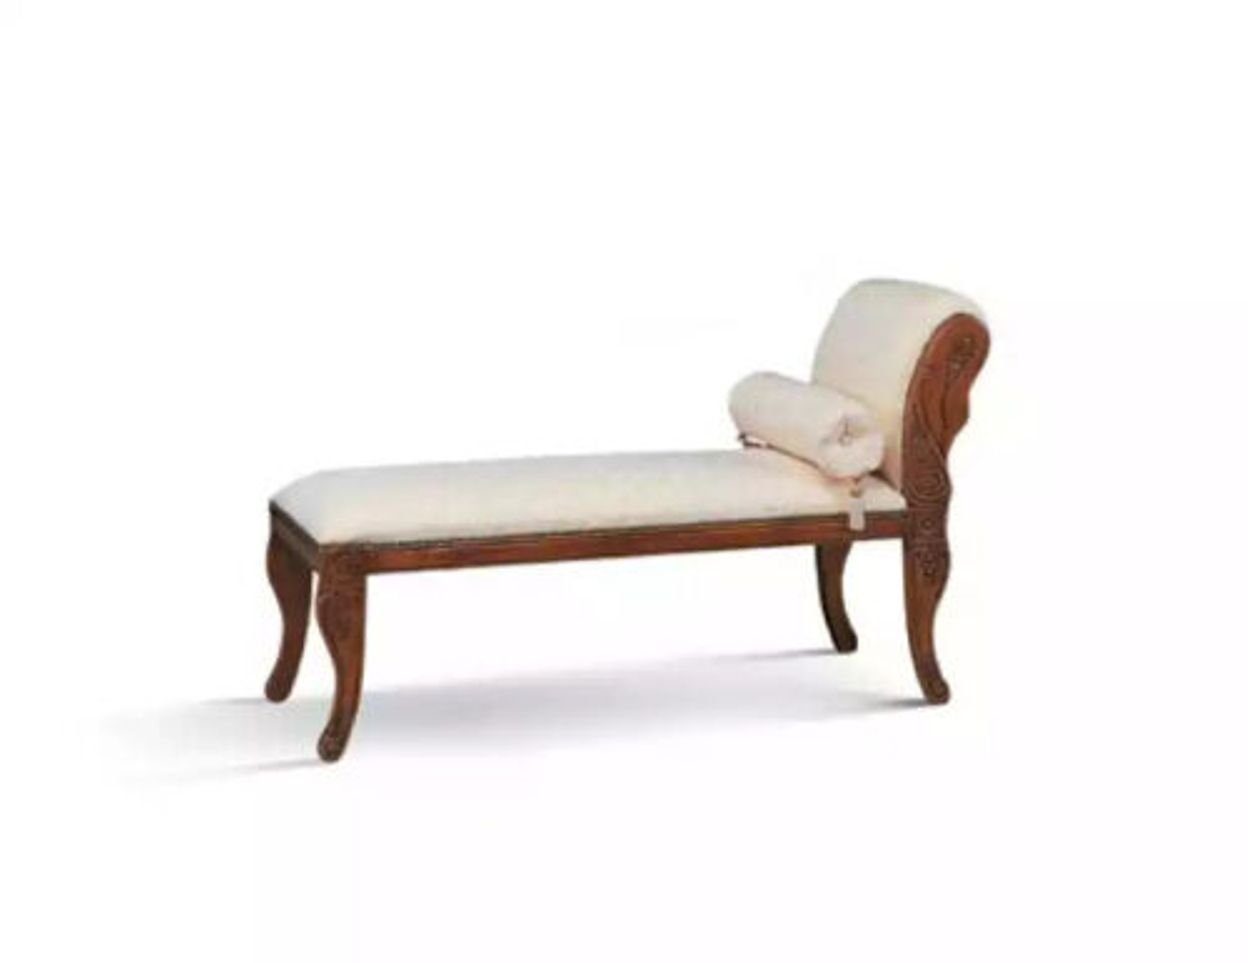 JVmoebel Chaiselongue Klassisch Chaiselounge Italienische Möbel Liege Weiß Sofa Relax Neu, 1 Teile, Made in Italy